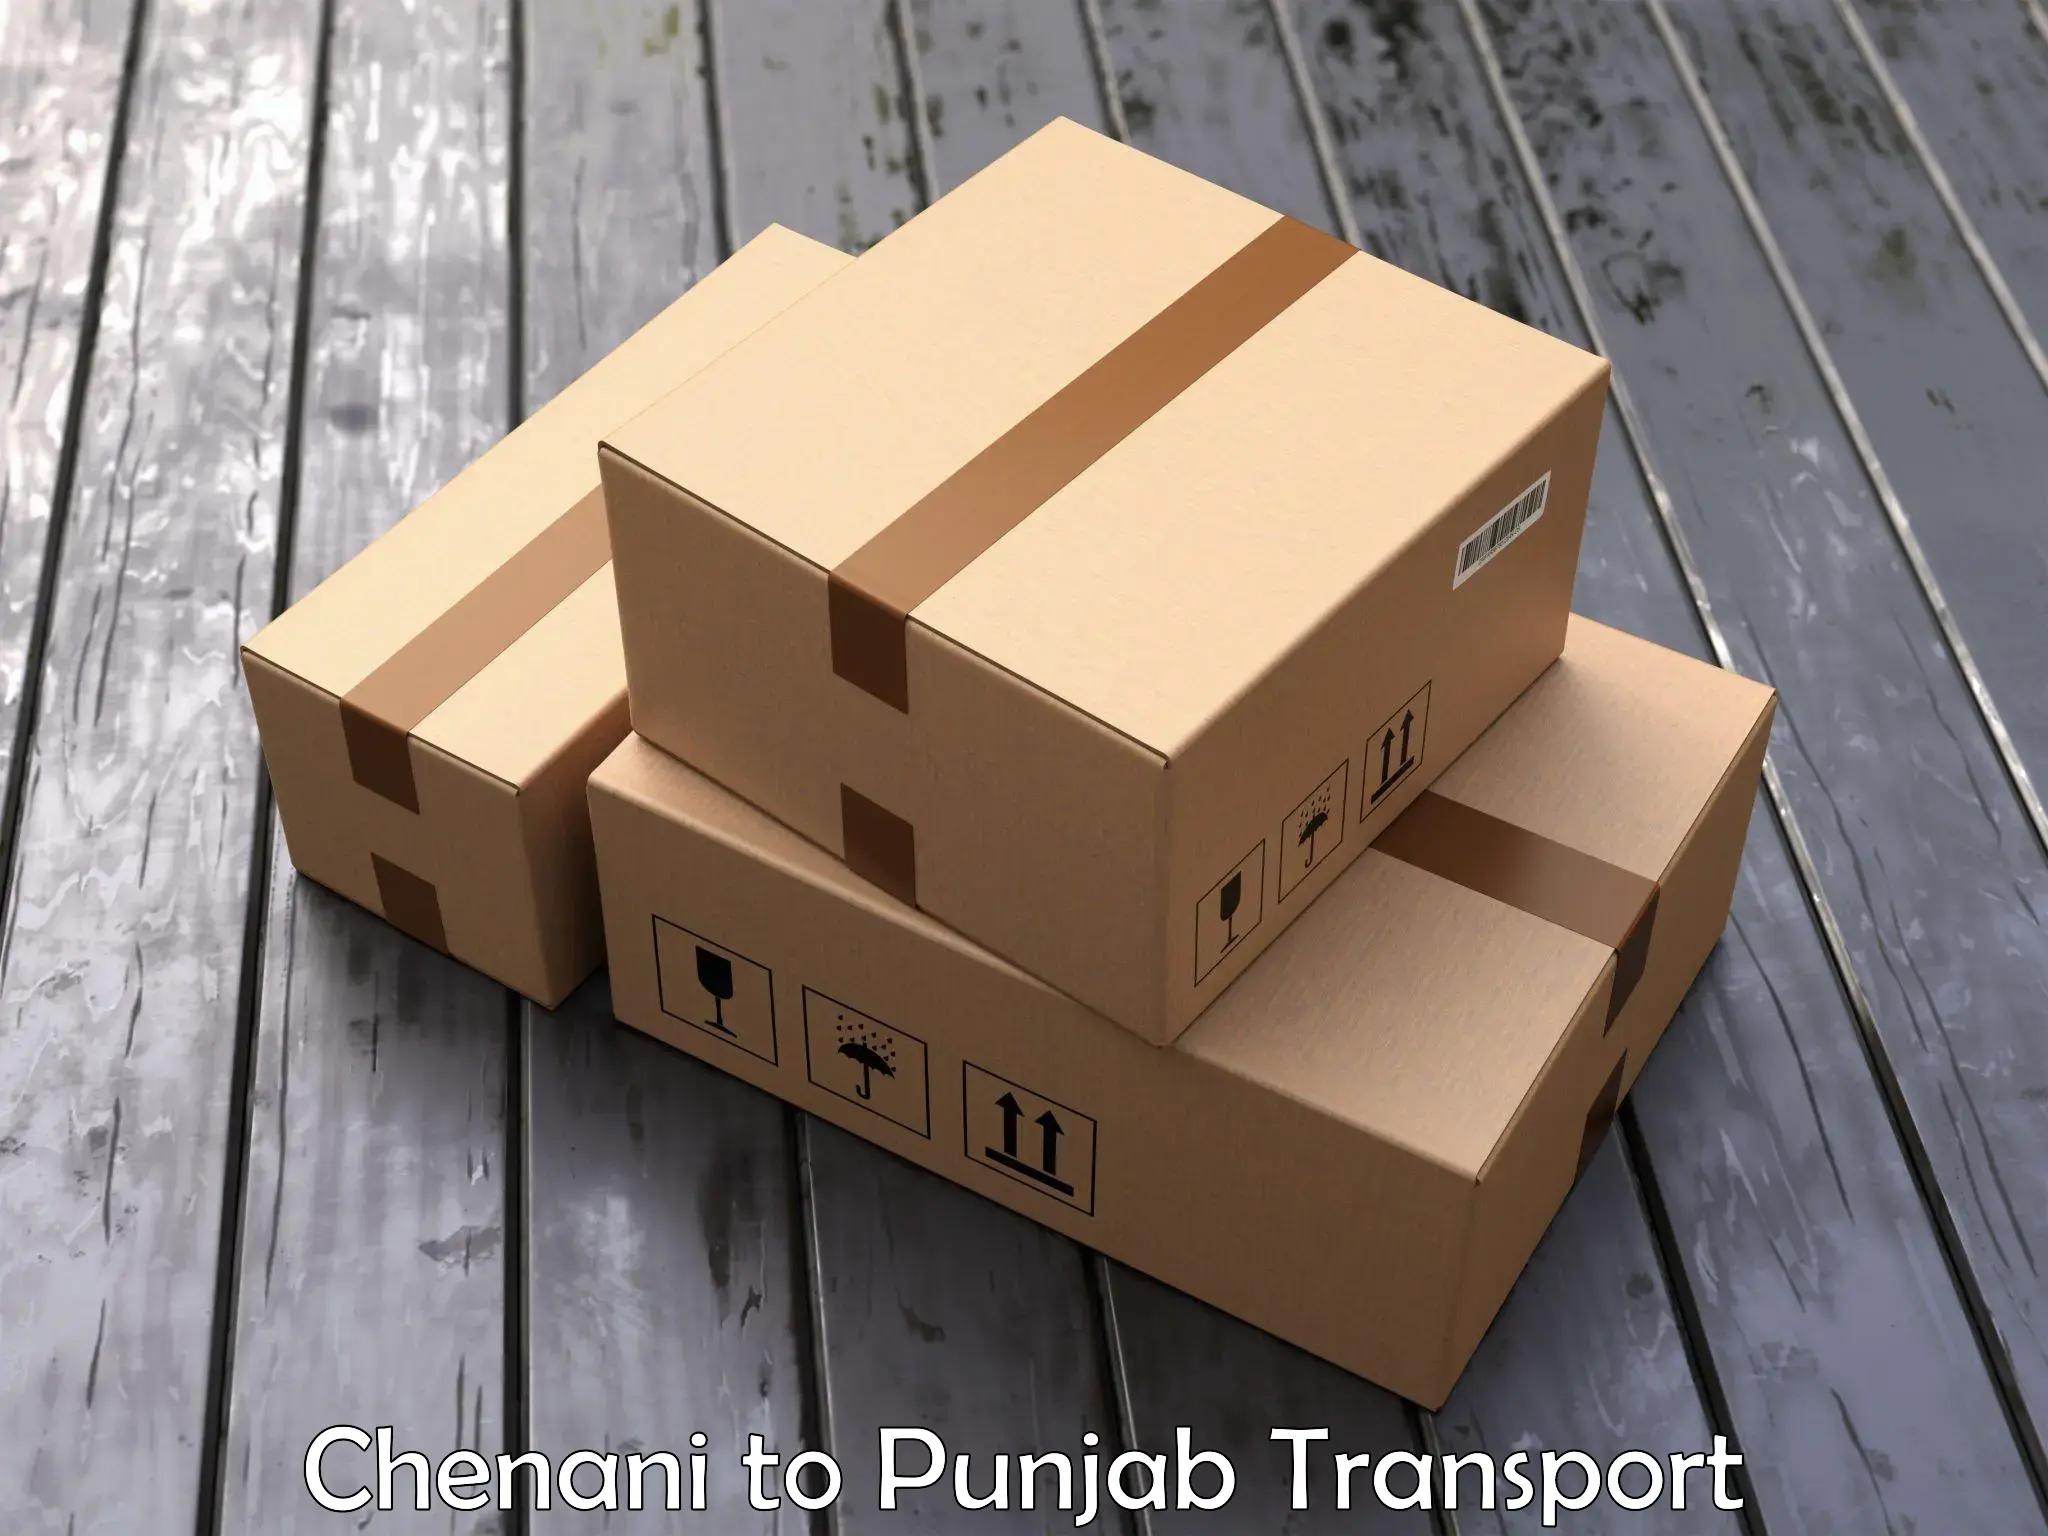 Furniture transport service Chenani to Hoshiarpur